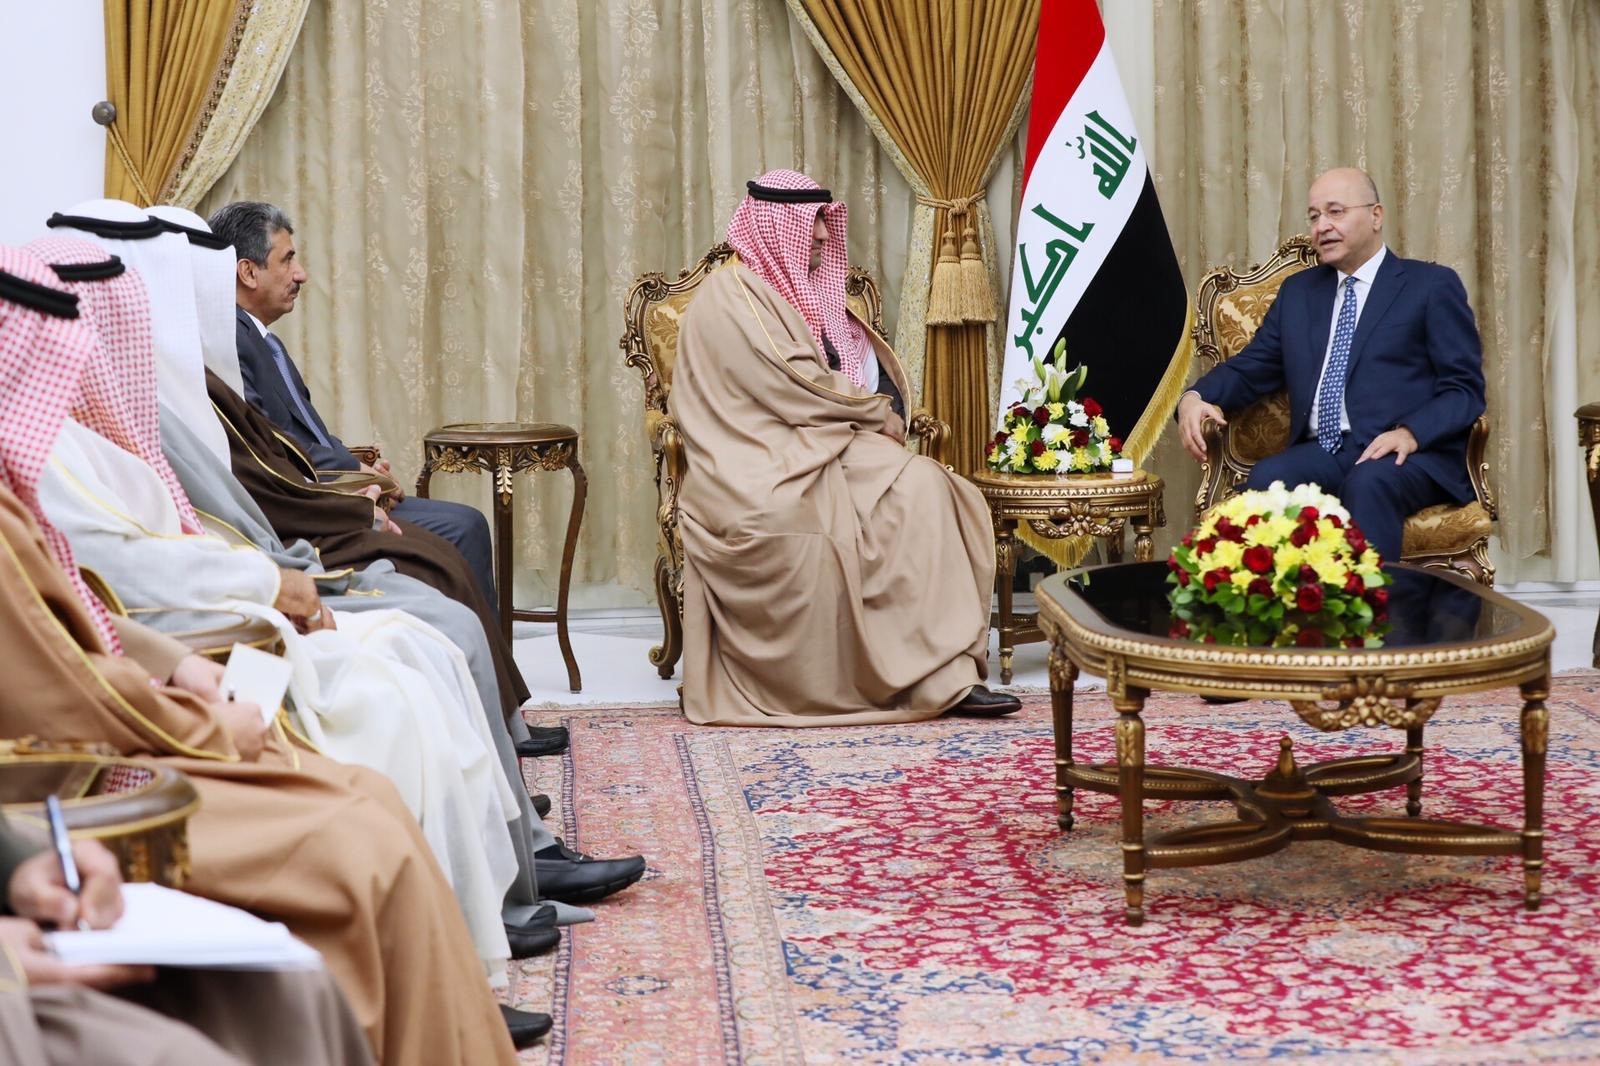 الرئيس العراقي برهم صالح يلتقي مع بوزير التجارة والصناعة الكويتي خالد الروضان